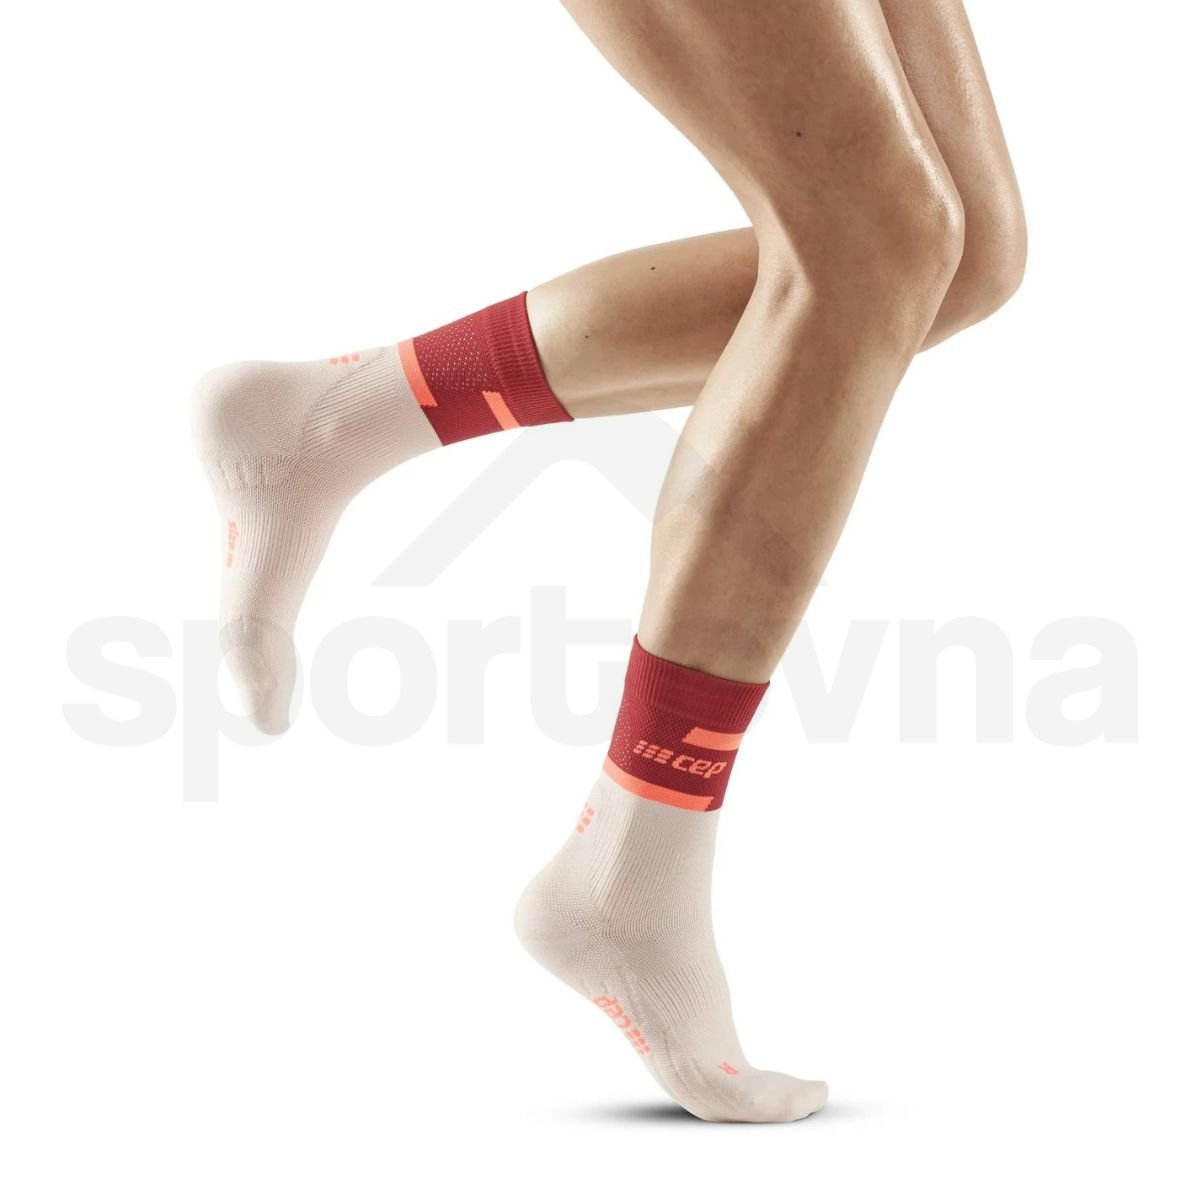 Ponožky CEP 4.0 W - červená/bílá